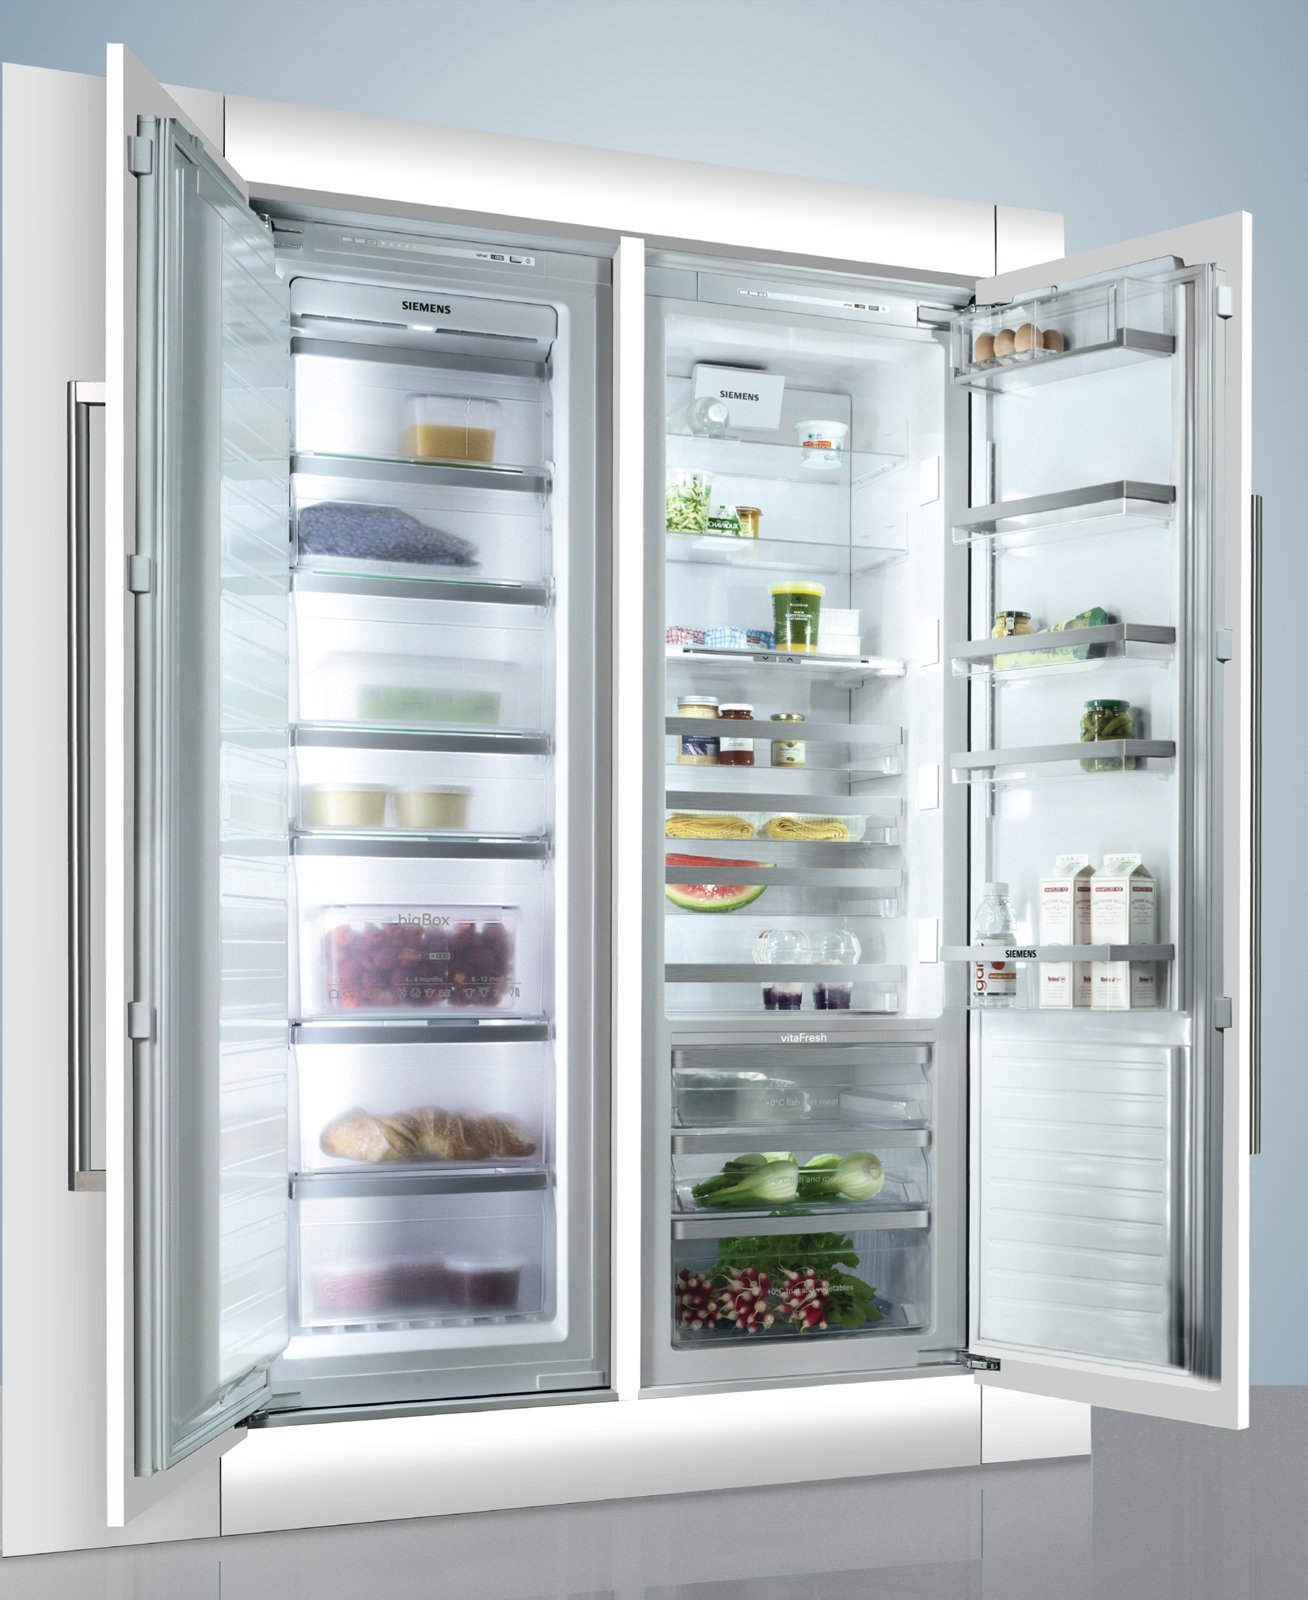 Le caratteristiche di un frigorifero congelatore